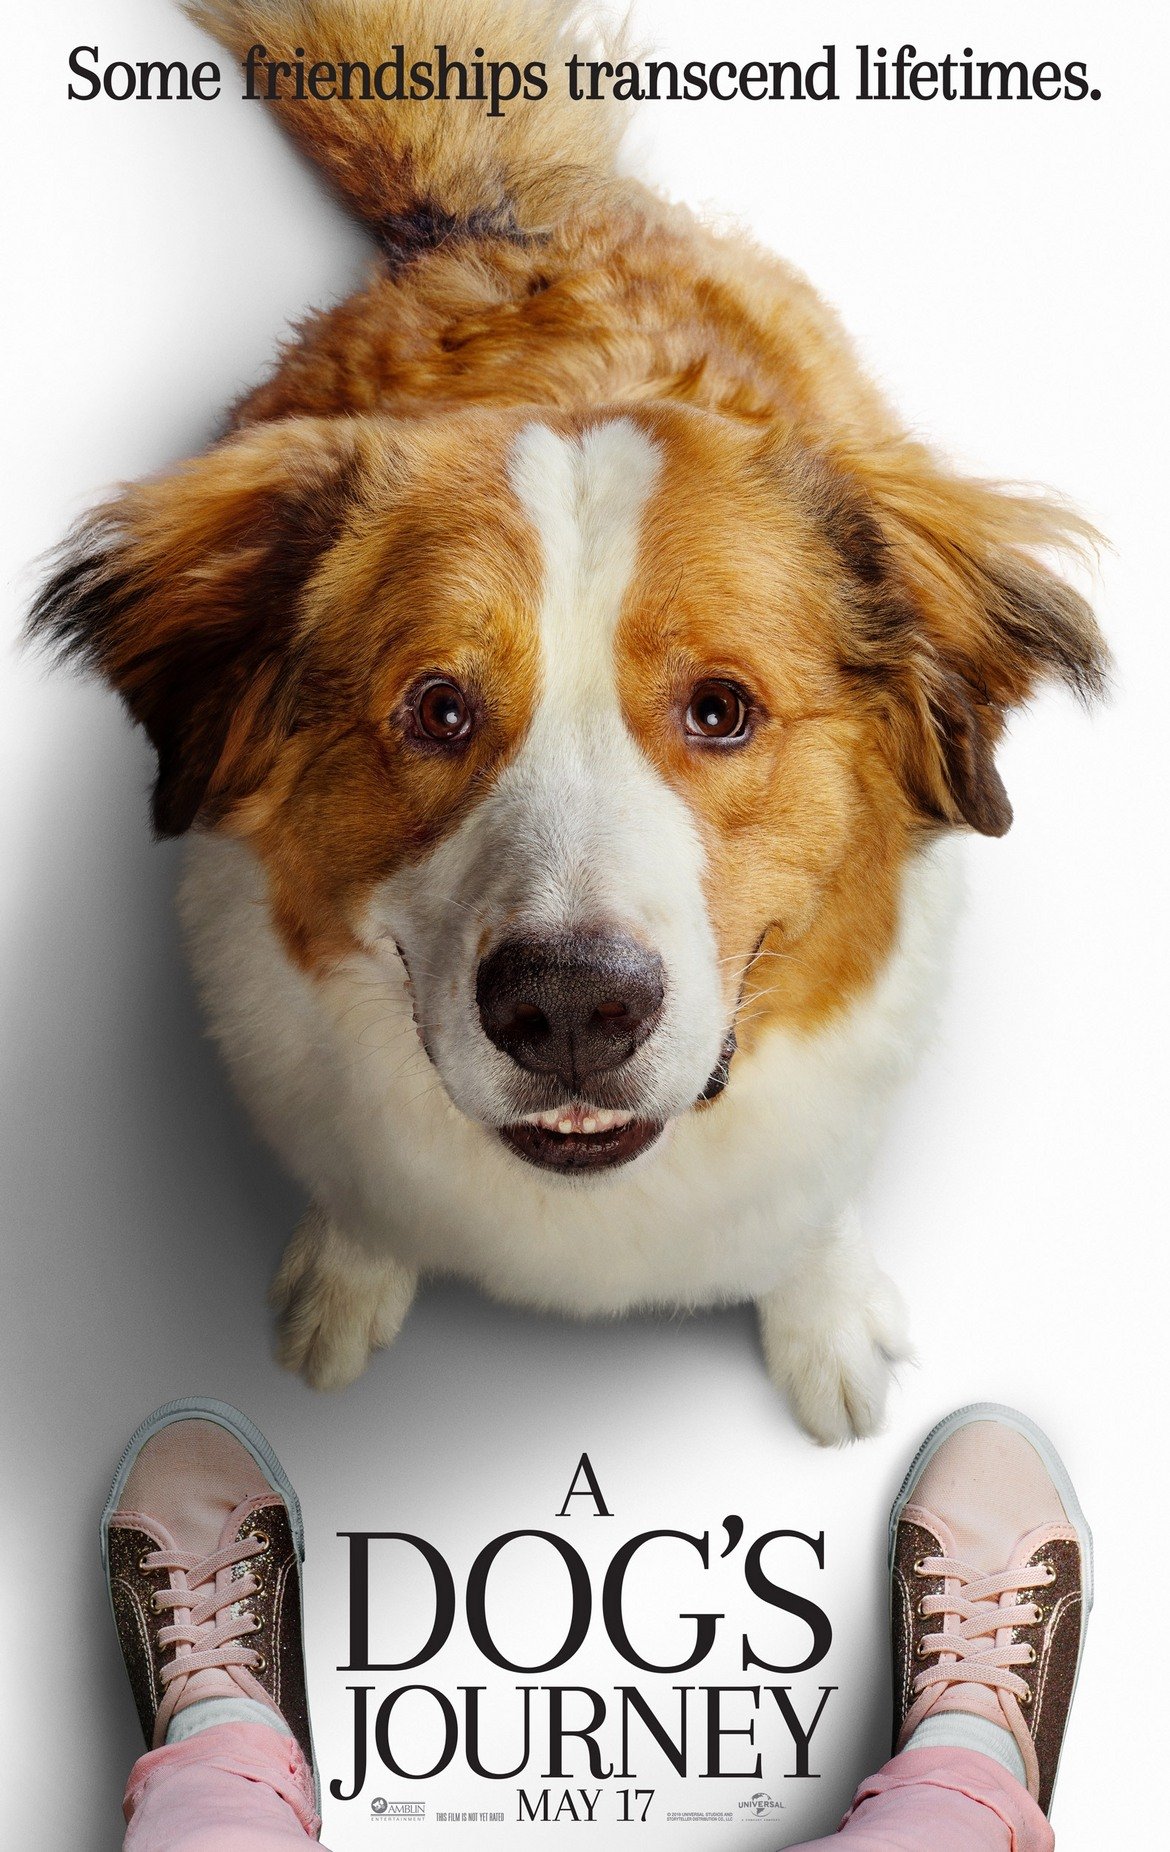 Кучешки живот 2 (A Dog`s Journey), 07 юни

Режисьорът Гейл Манкузо предлага чудесен семеен филм, в който главният герой е куче. Той намира смисъла на своя живот, срещайки различни хора. В главните роли ще видим Денис Куейд (на когото отива да участва в семейни филми), Мардж Хелгенбъргър ("От местопрестъплението: Лас Вегас"), Бети Гиплин и др.